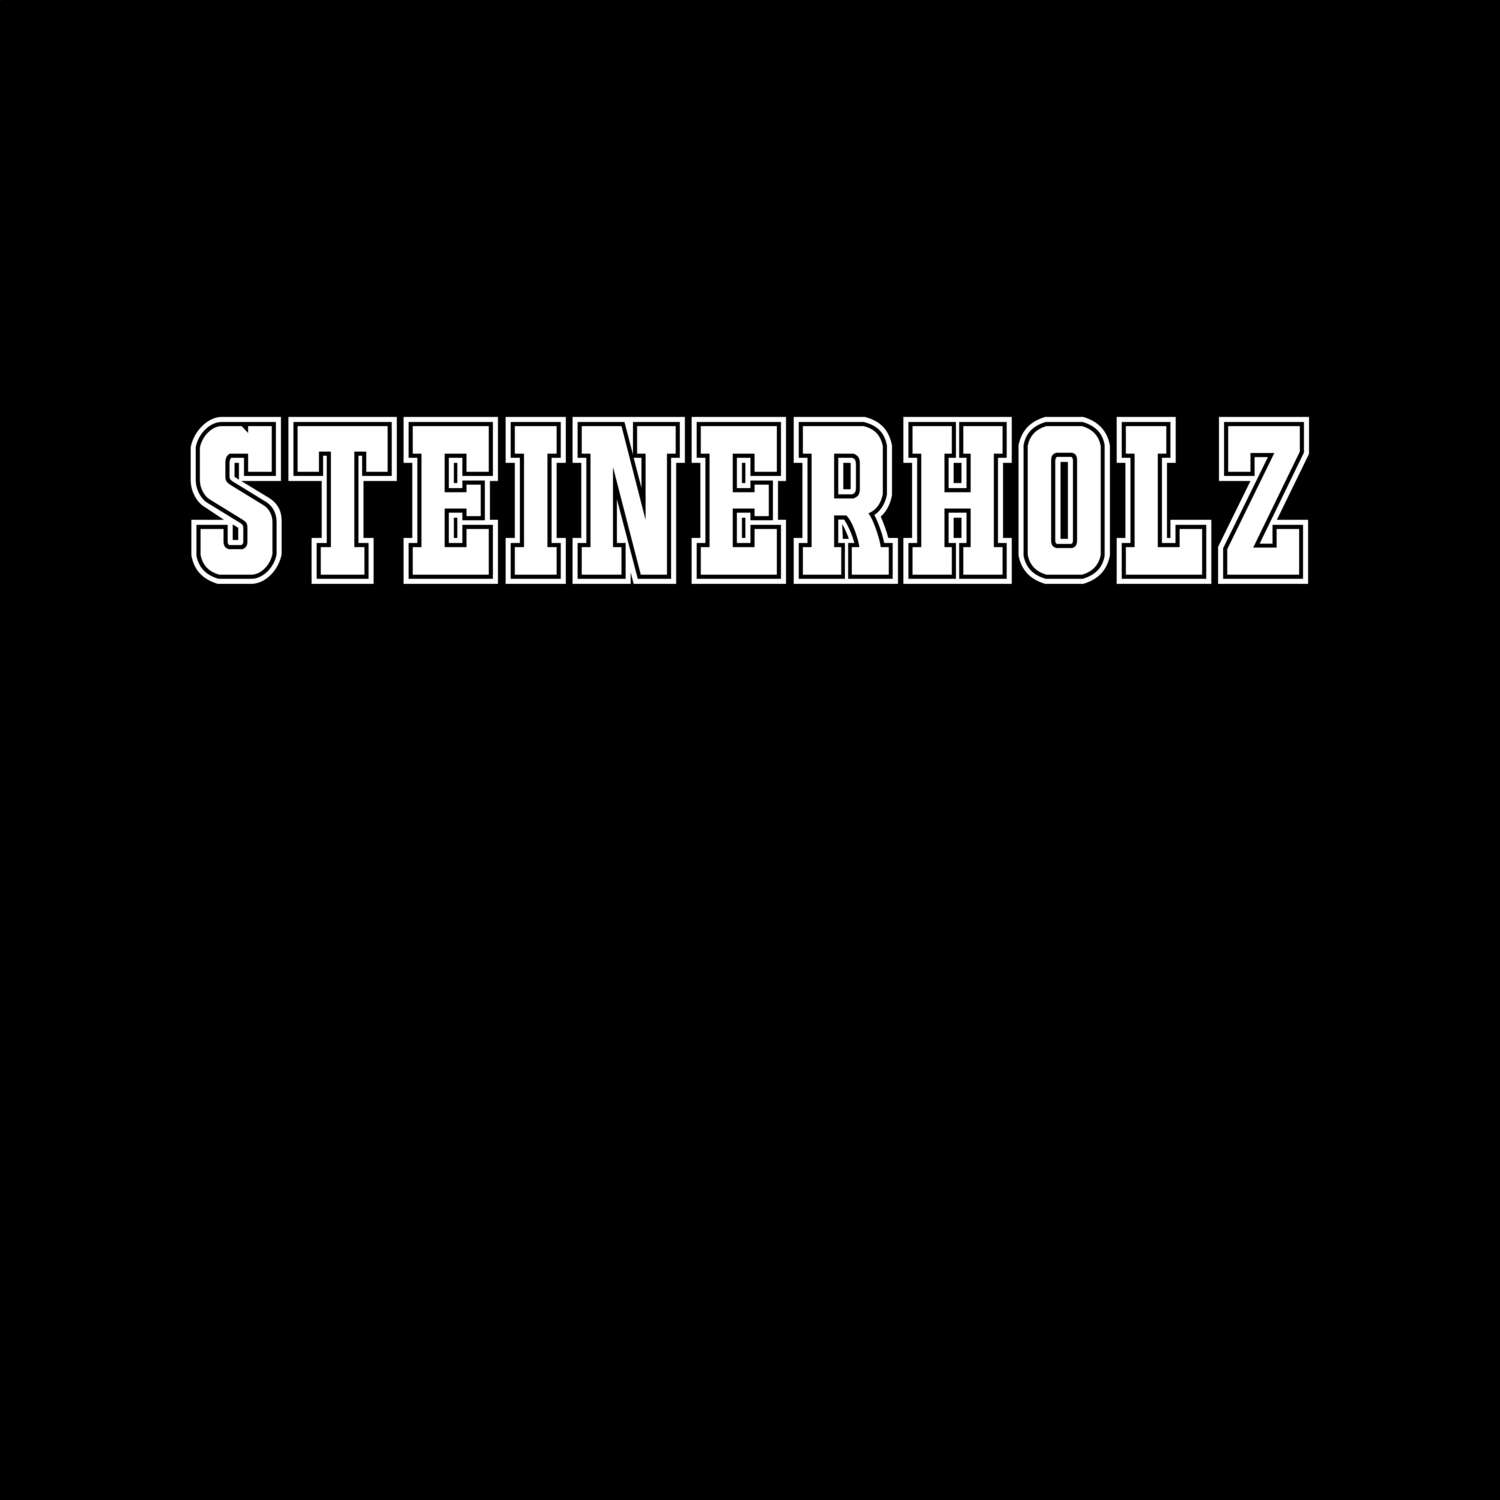 Steinerholz T-Shirt »Classic«